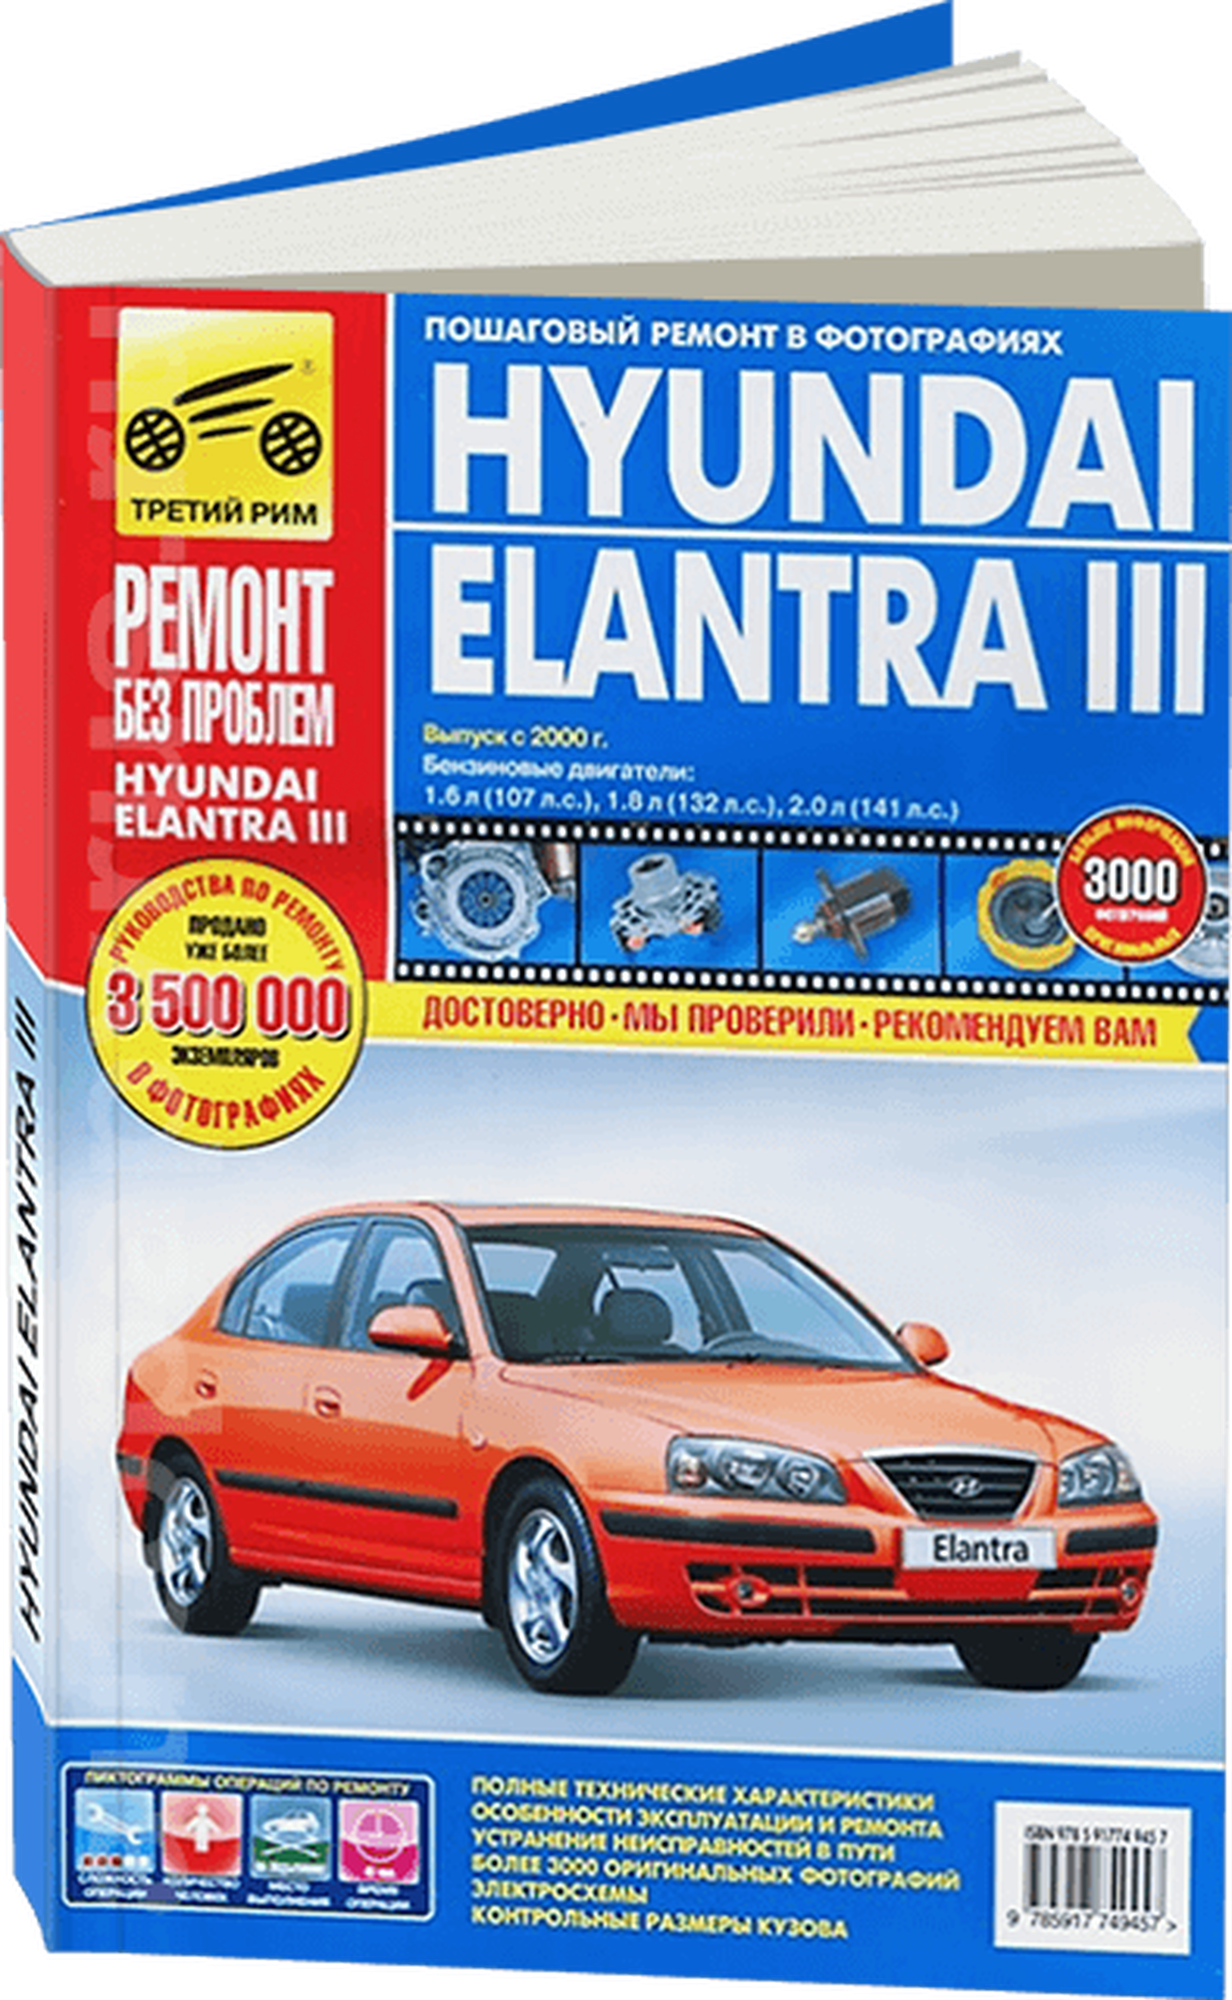 Hyundai Elantra III: руководство по эксплуатации, техническому обслуживанию и ремонту - фото №1